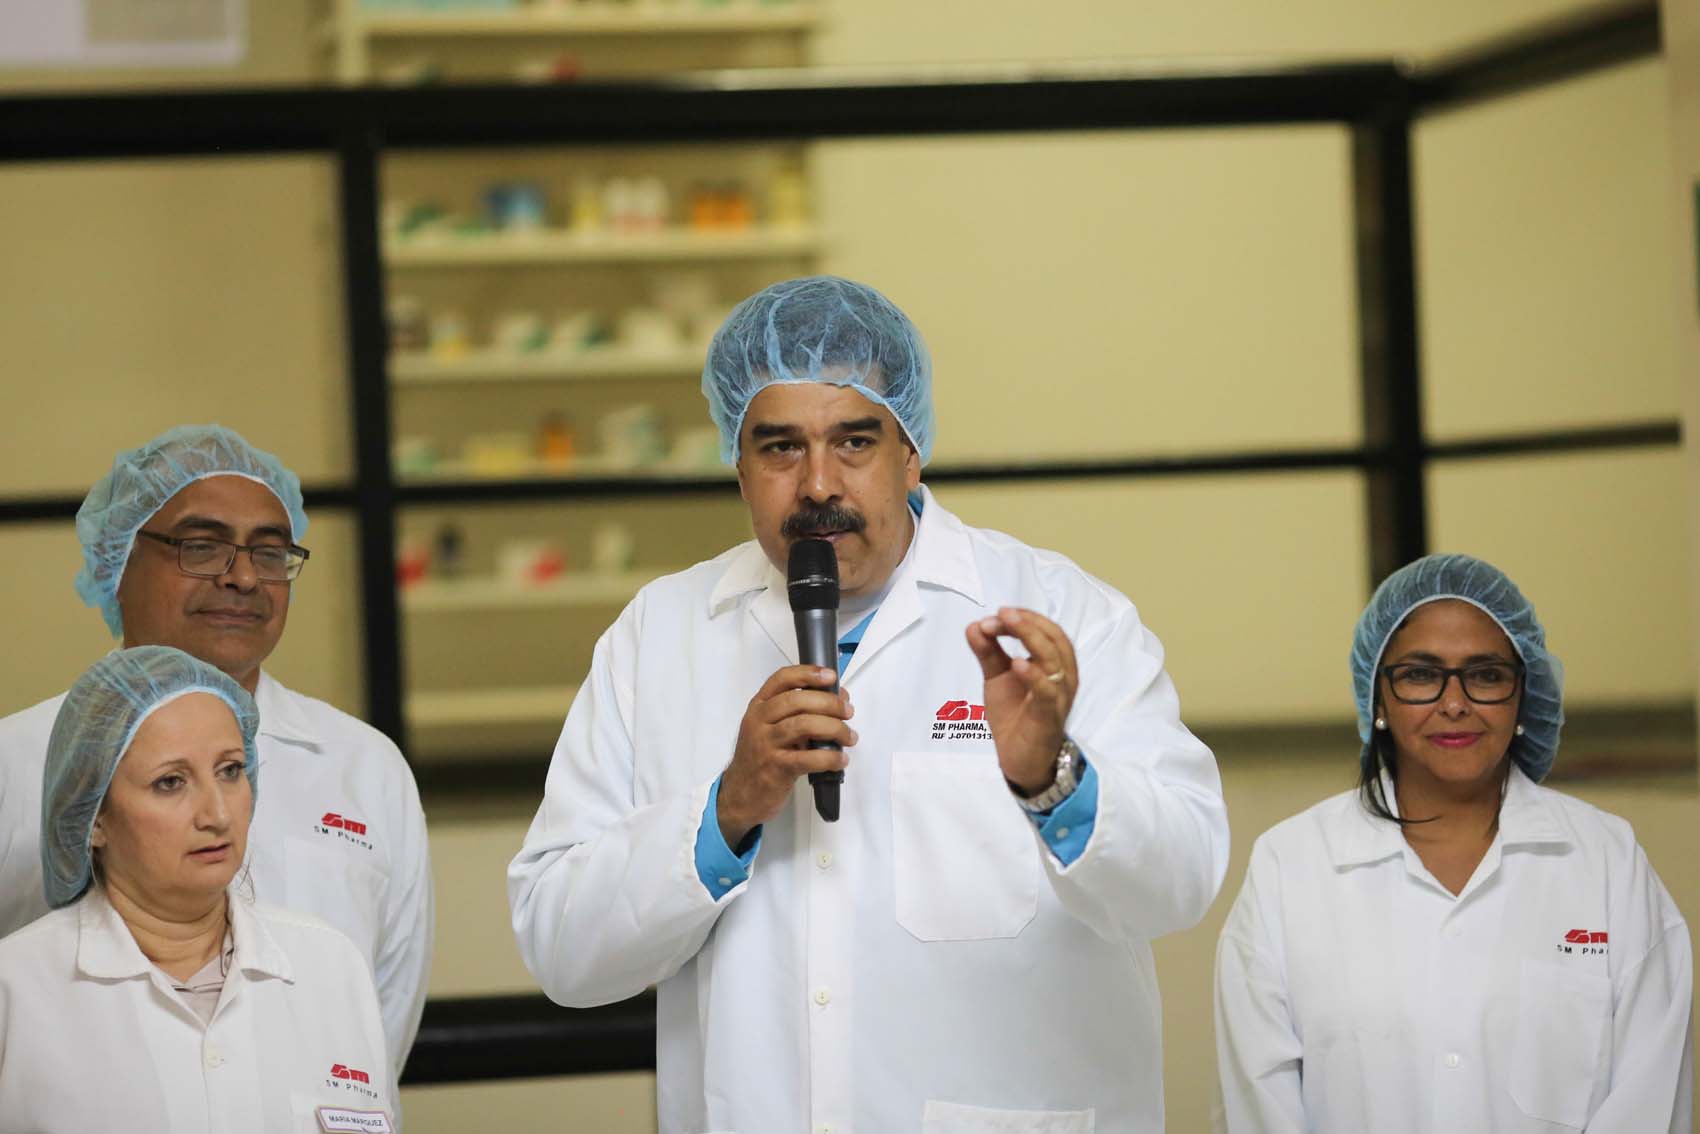 El arbitraje entre un empresario español y Venezuela por SM Pharma durará años